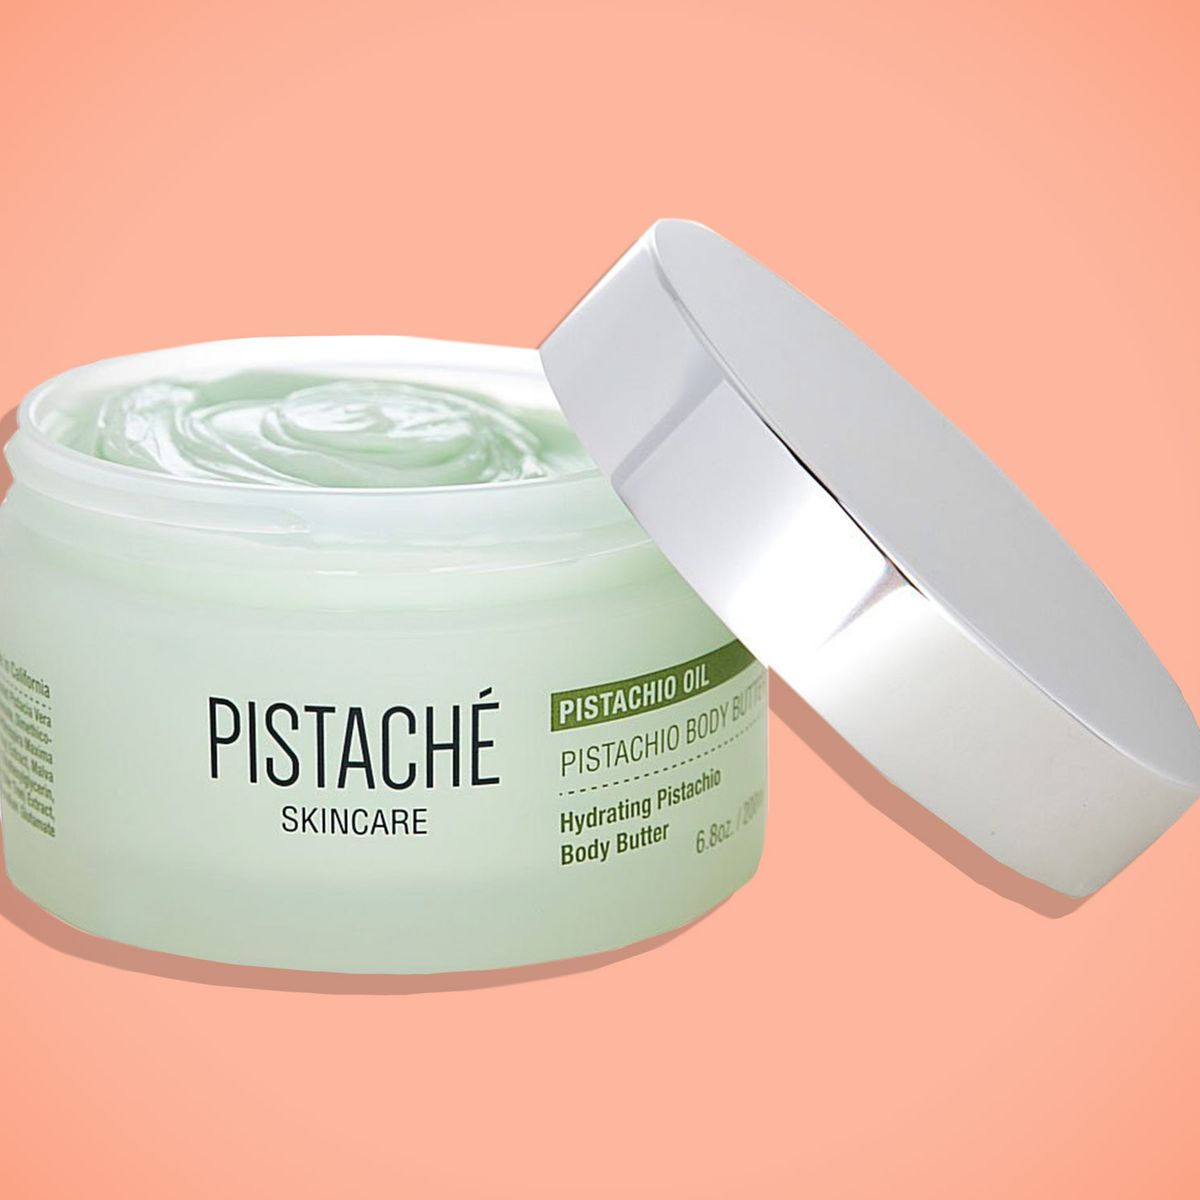 datum Belonend kleur Pistache Skincare Pistachio Body Butter Review 2019 | The Strategist